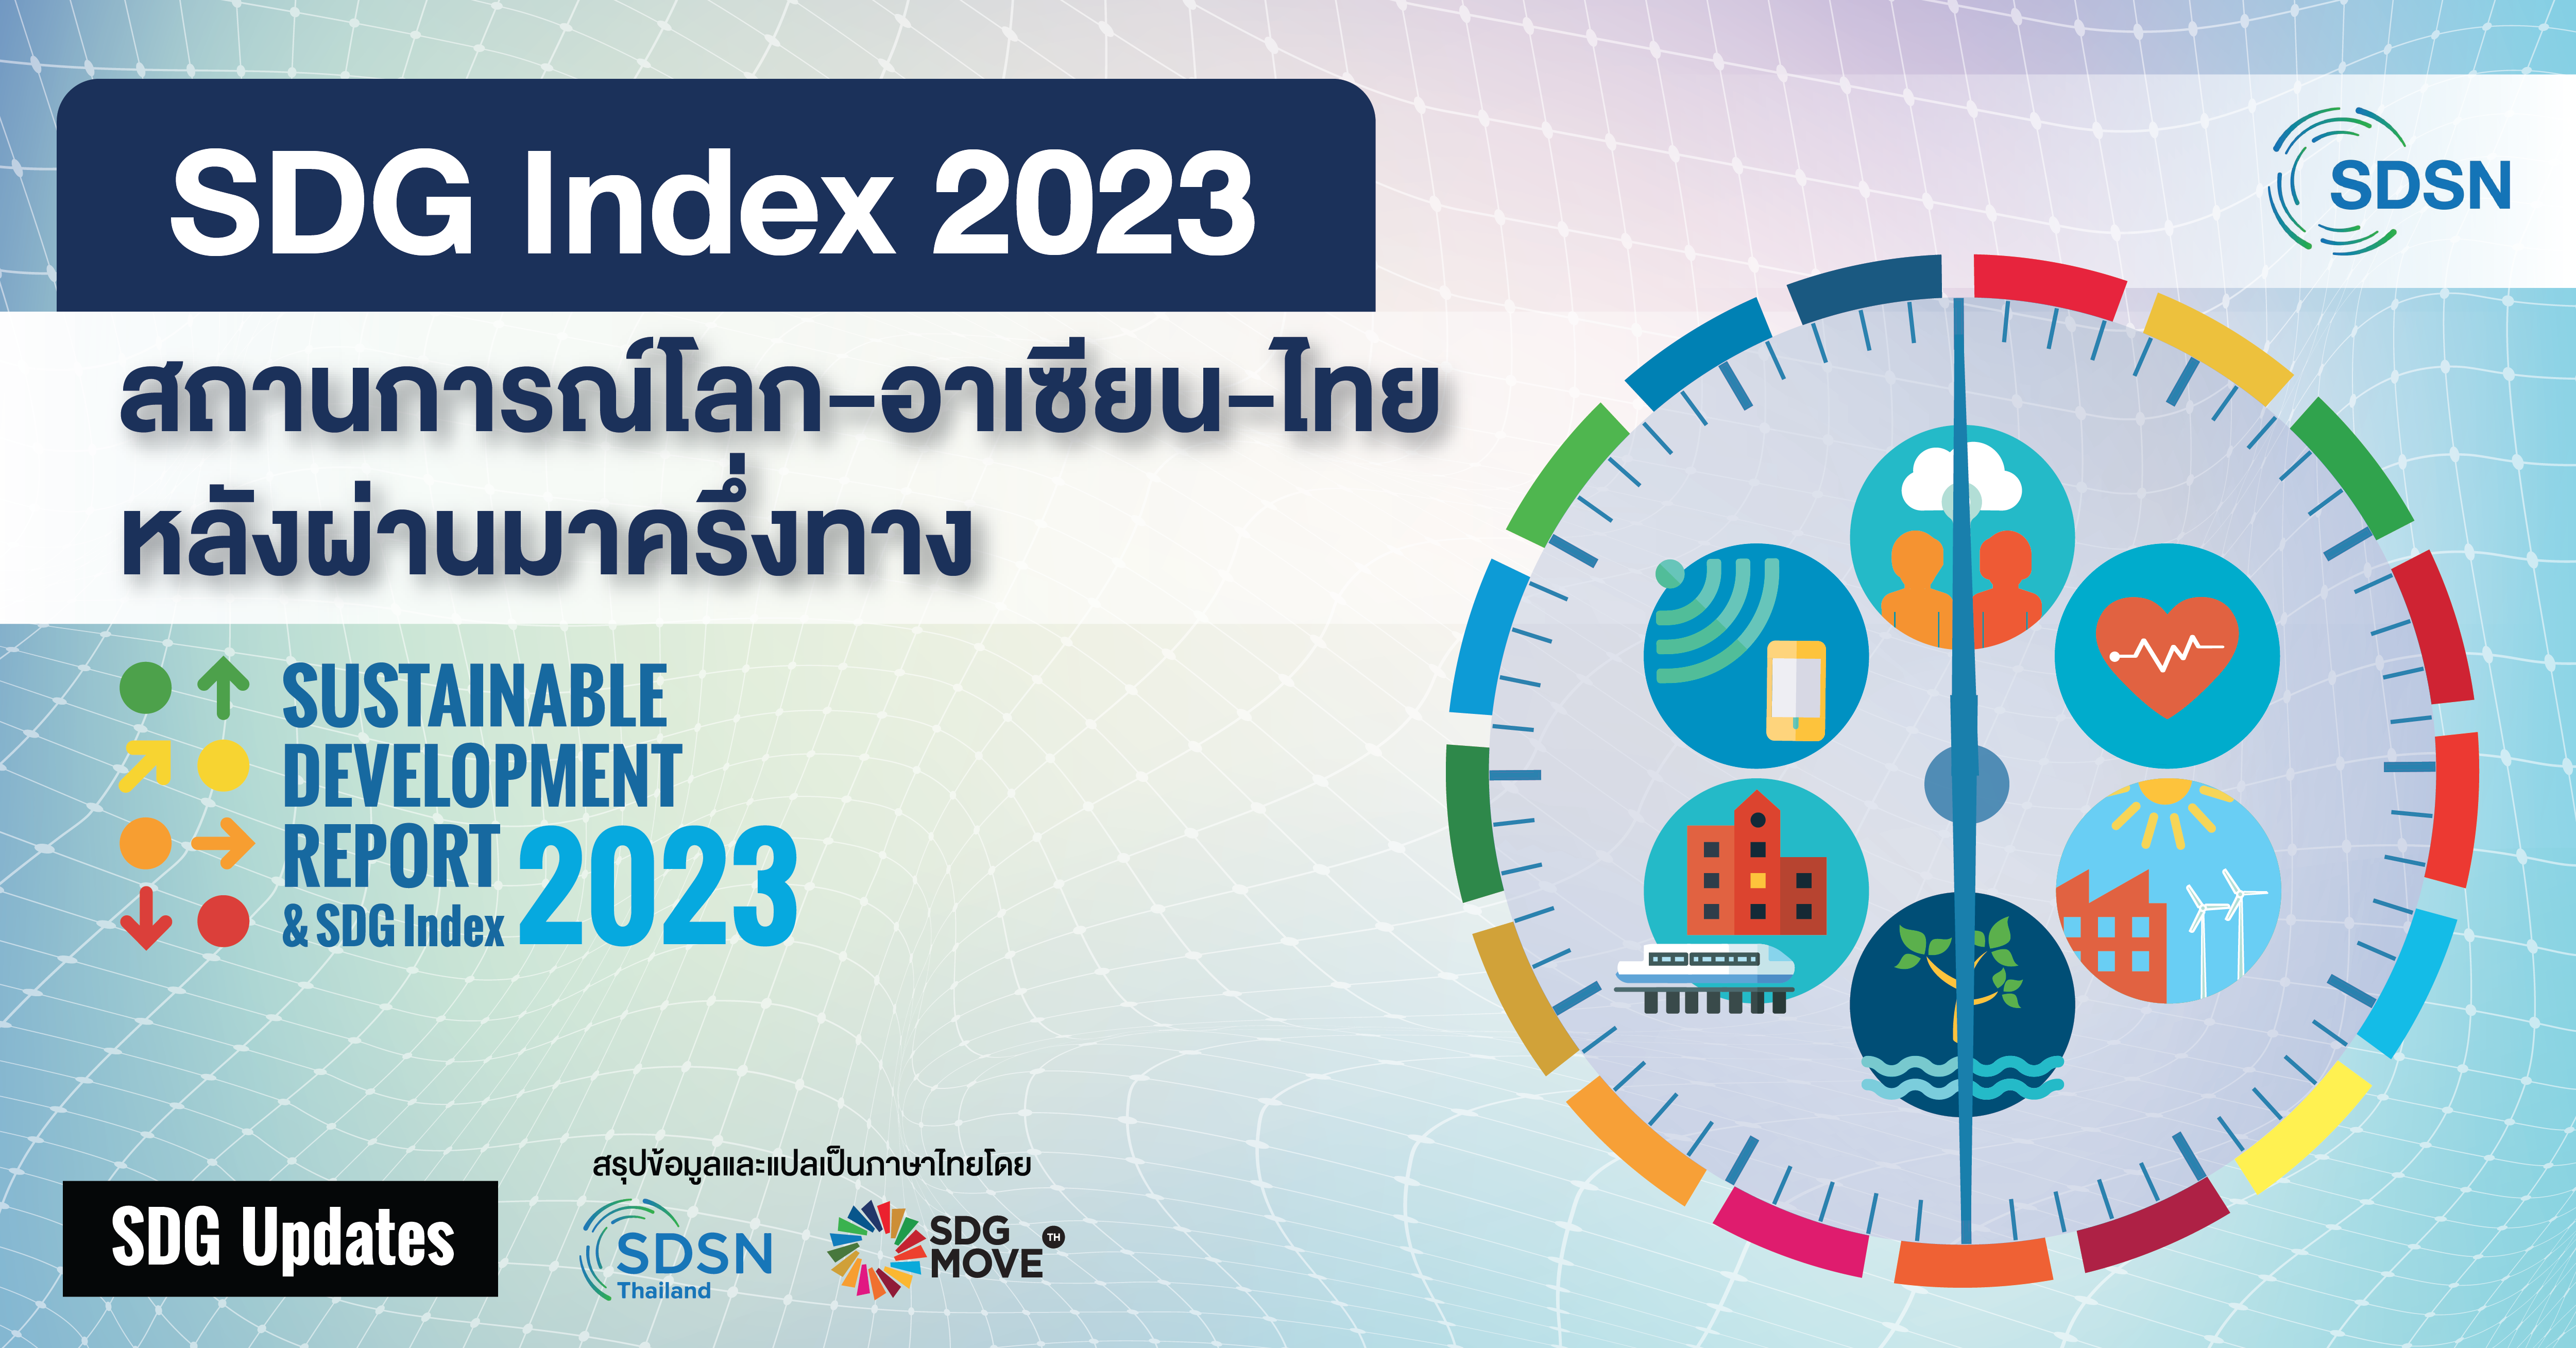 SDG Updates | SDG Index 2023 สถานการณ์โลก – อาเซียน – ไทยหลังผ่านมาครึ่งทาง